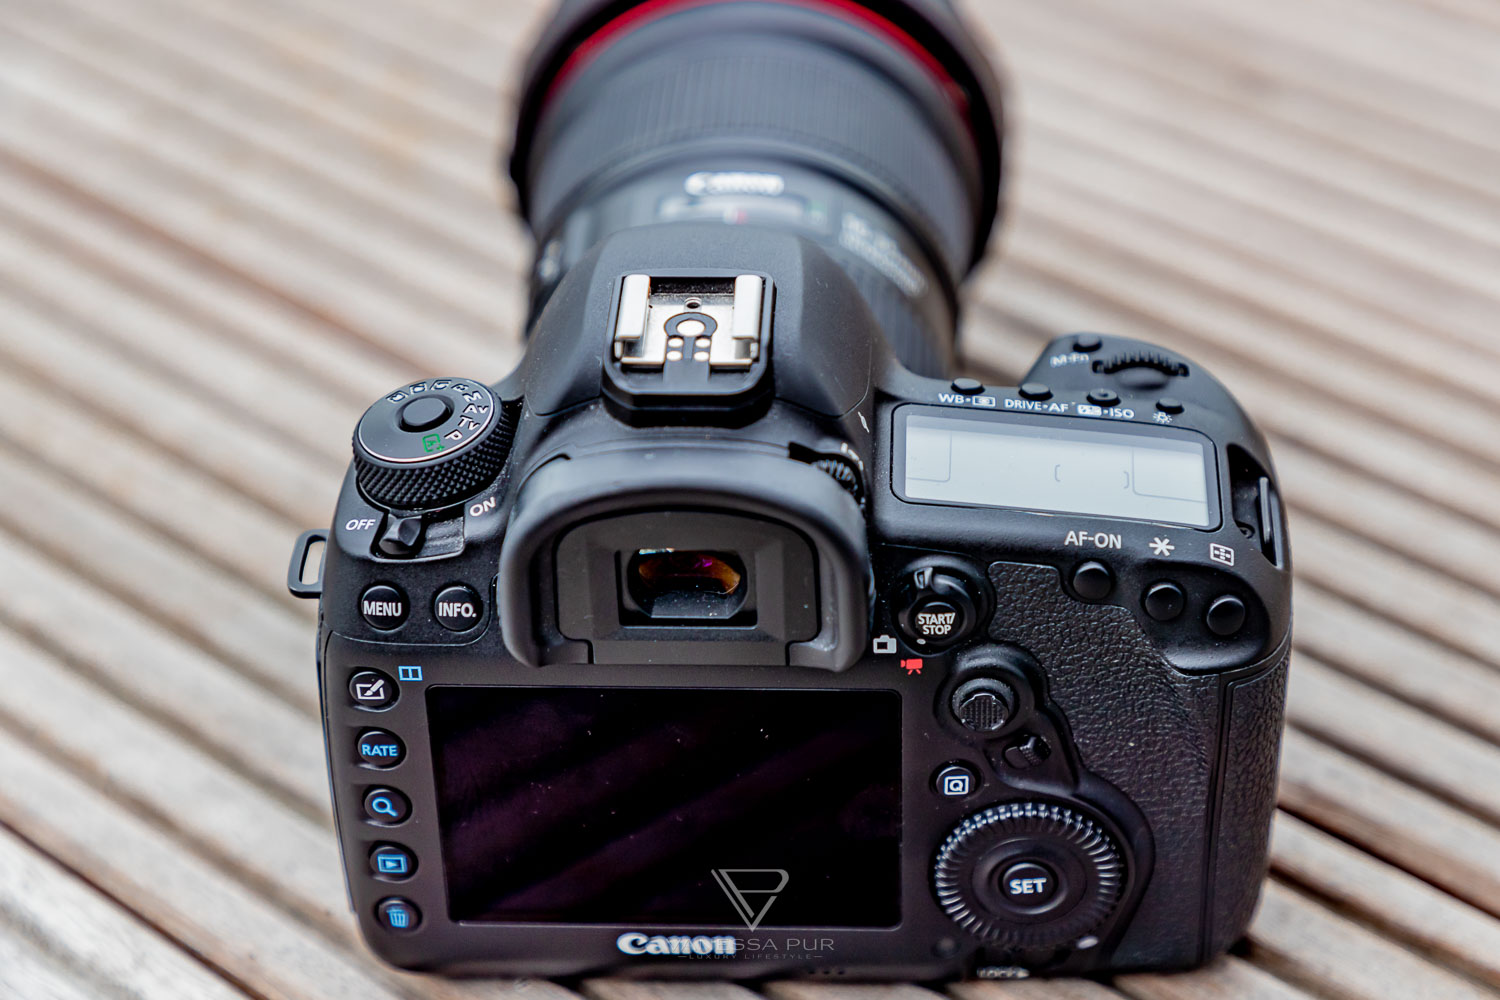 Canon 5D Mark IV - Test, Erfahrung, Langzeit-Test - 1 Jahr unterwegs - Bewertung - Canon 5D Mark IV im Langzeittest - Wie gut ist die Canon 5d Mark IV für YouTuber und Vlogger? Ist es die perfekte Kamera? Welche Kamera für Einsteiger und Profis?